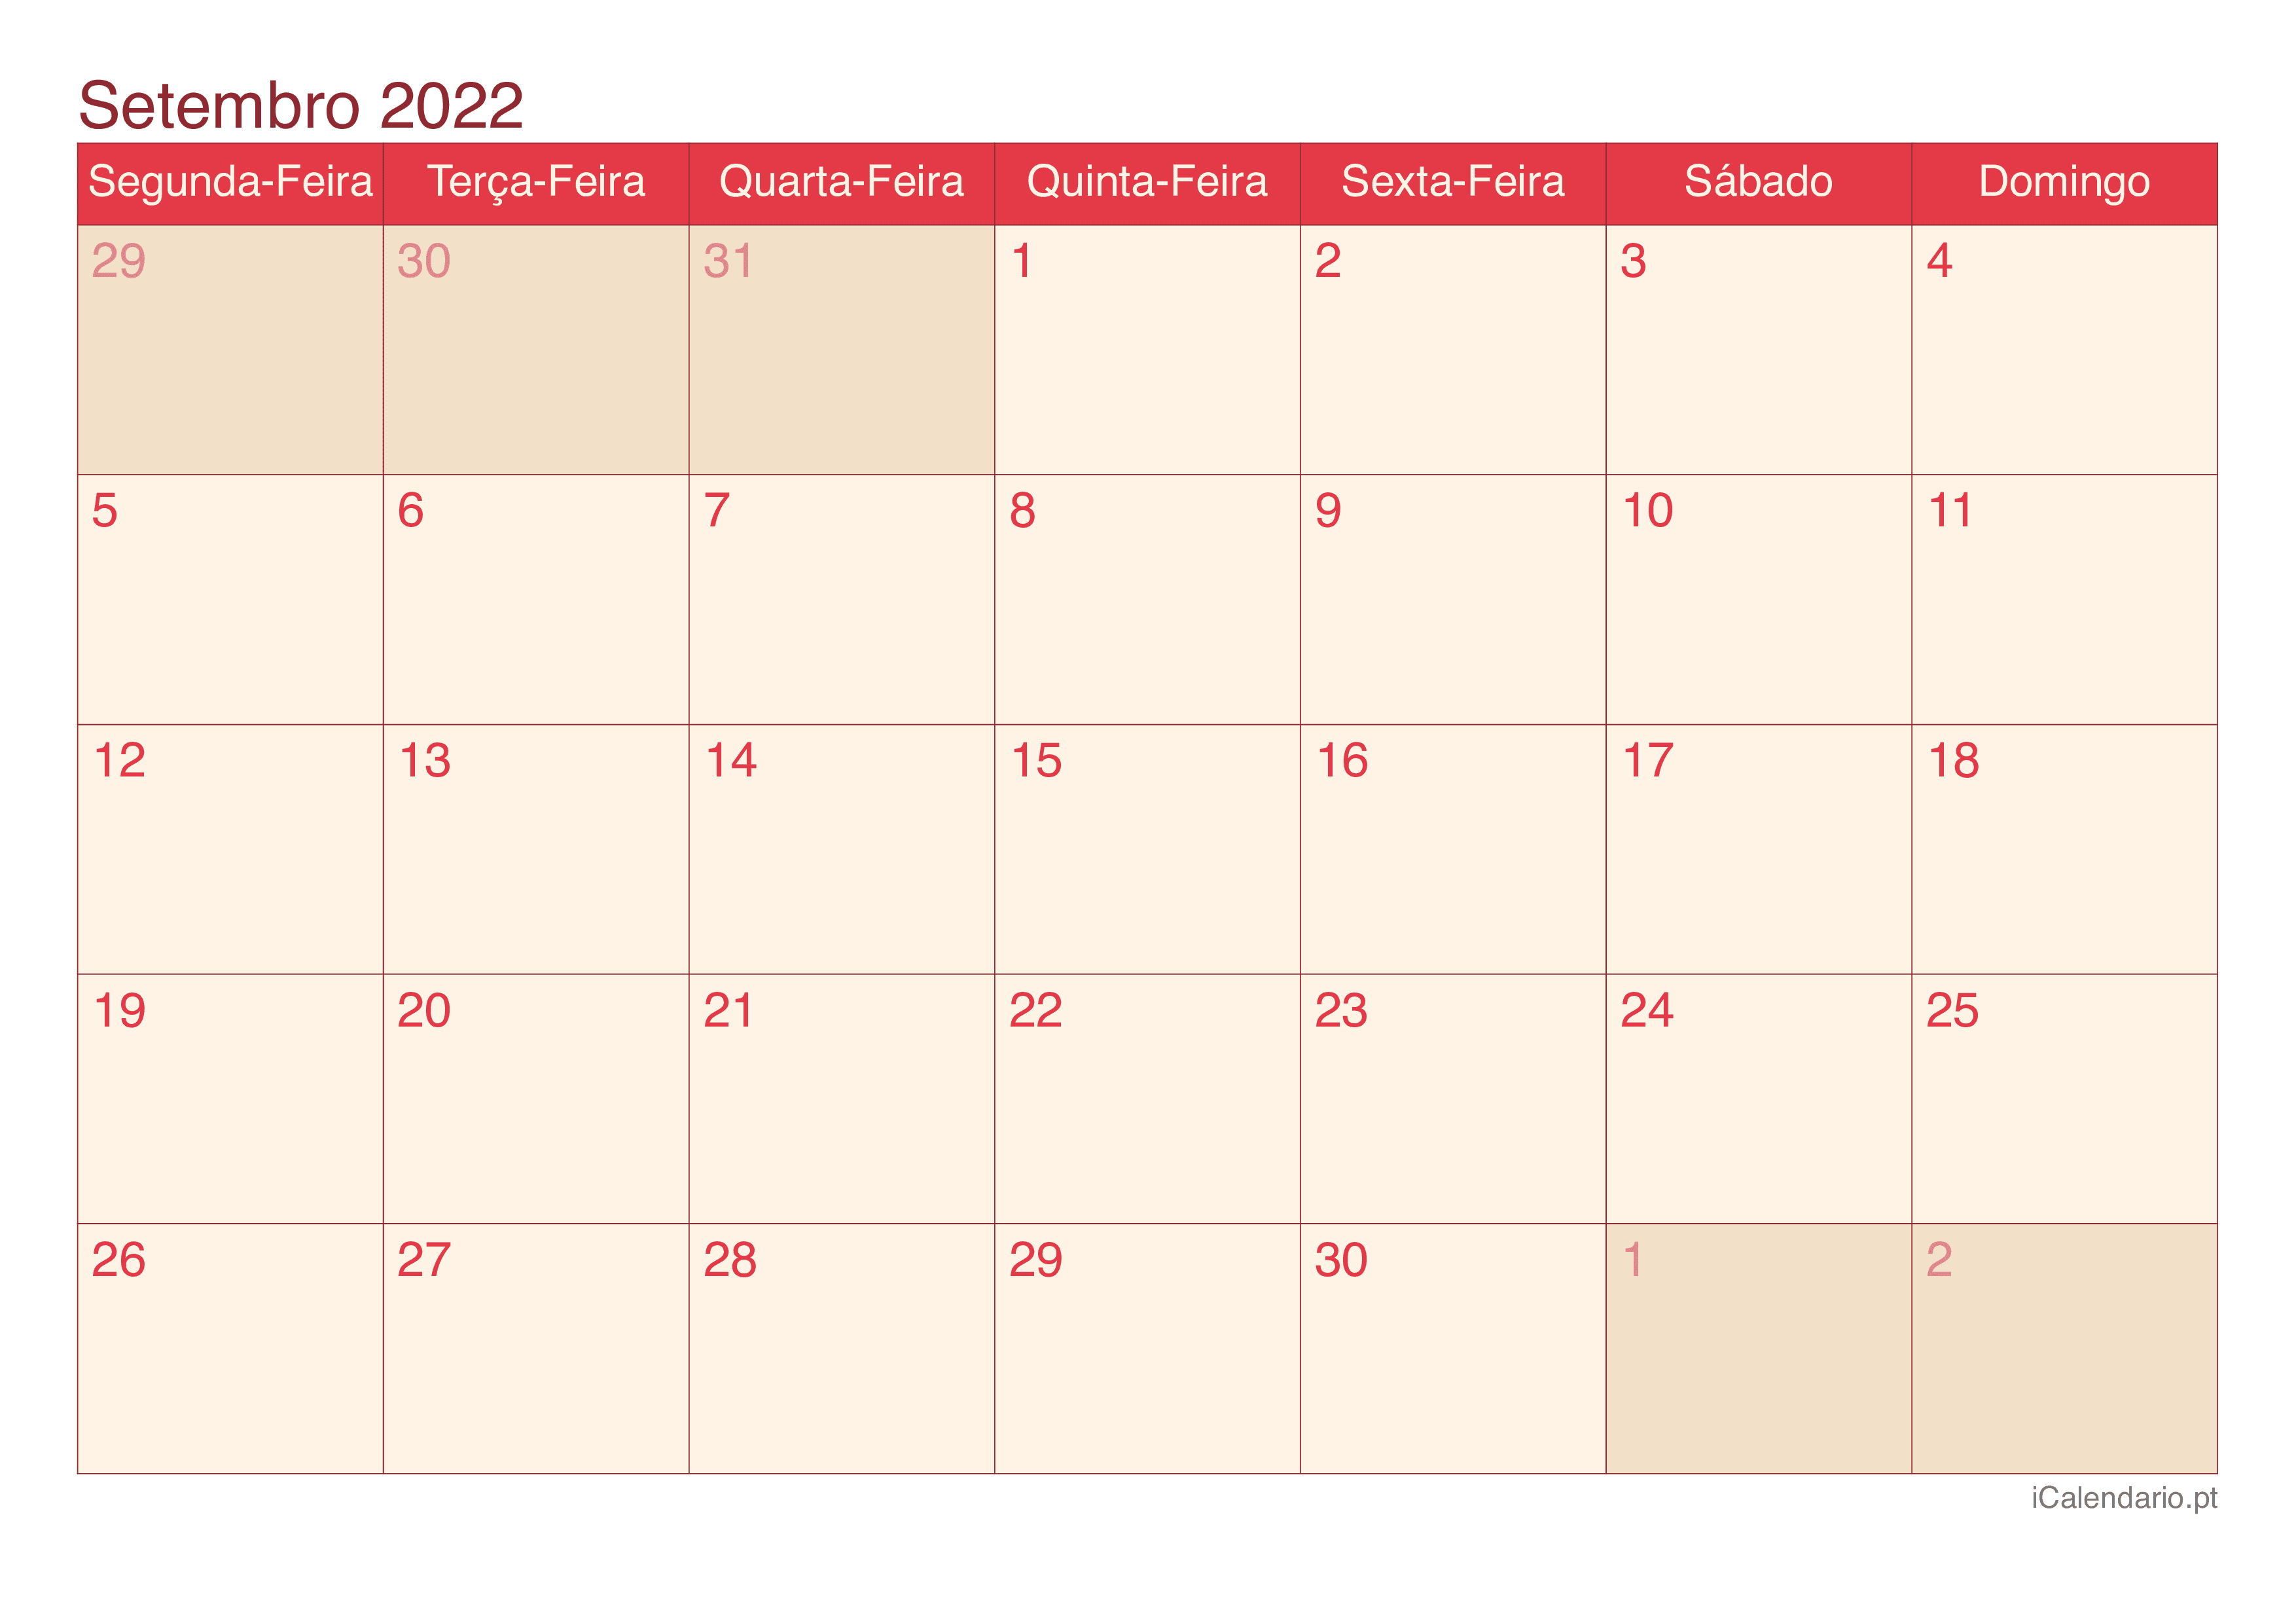 Calendário de setembro 2022 - Cherry